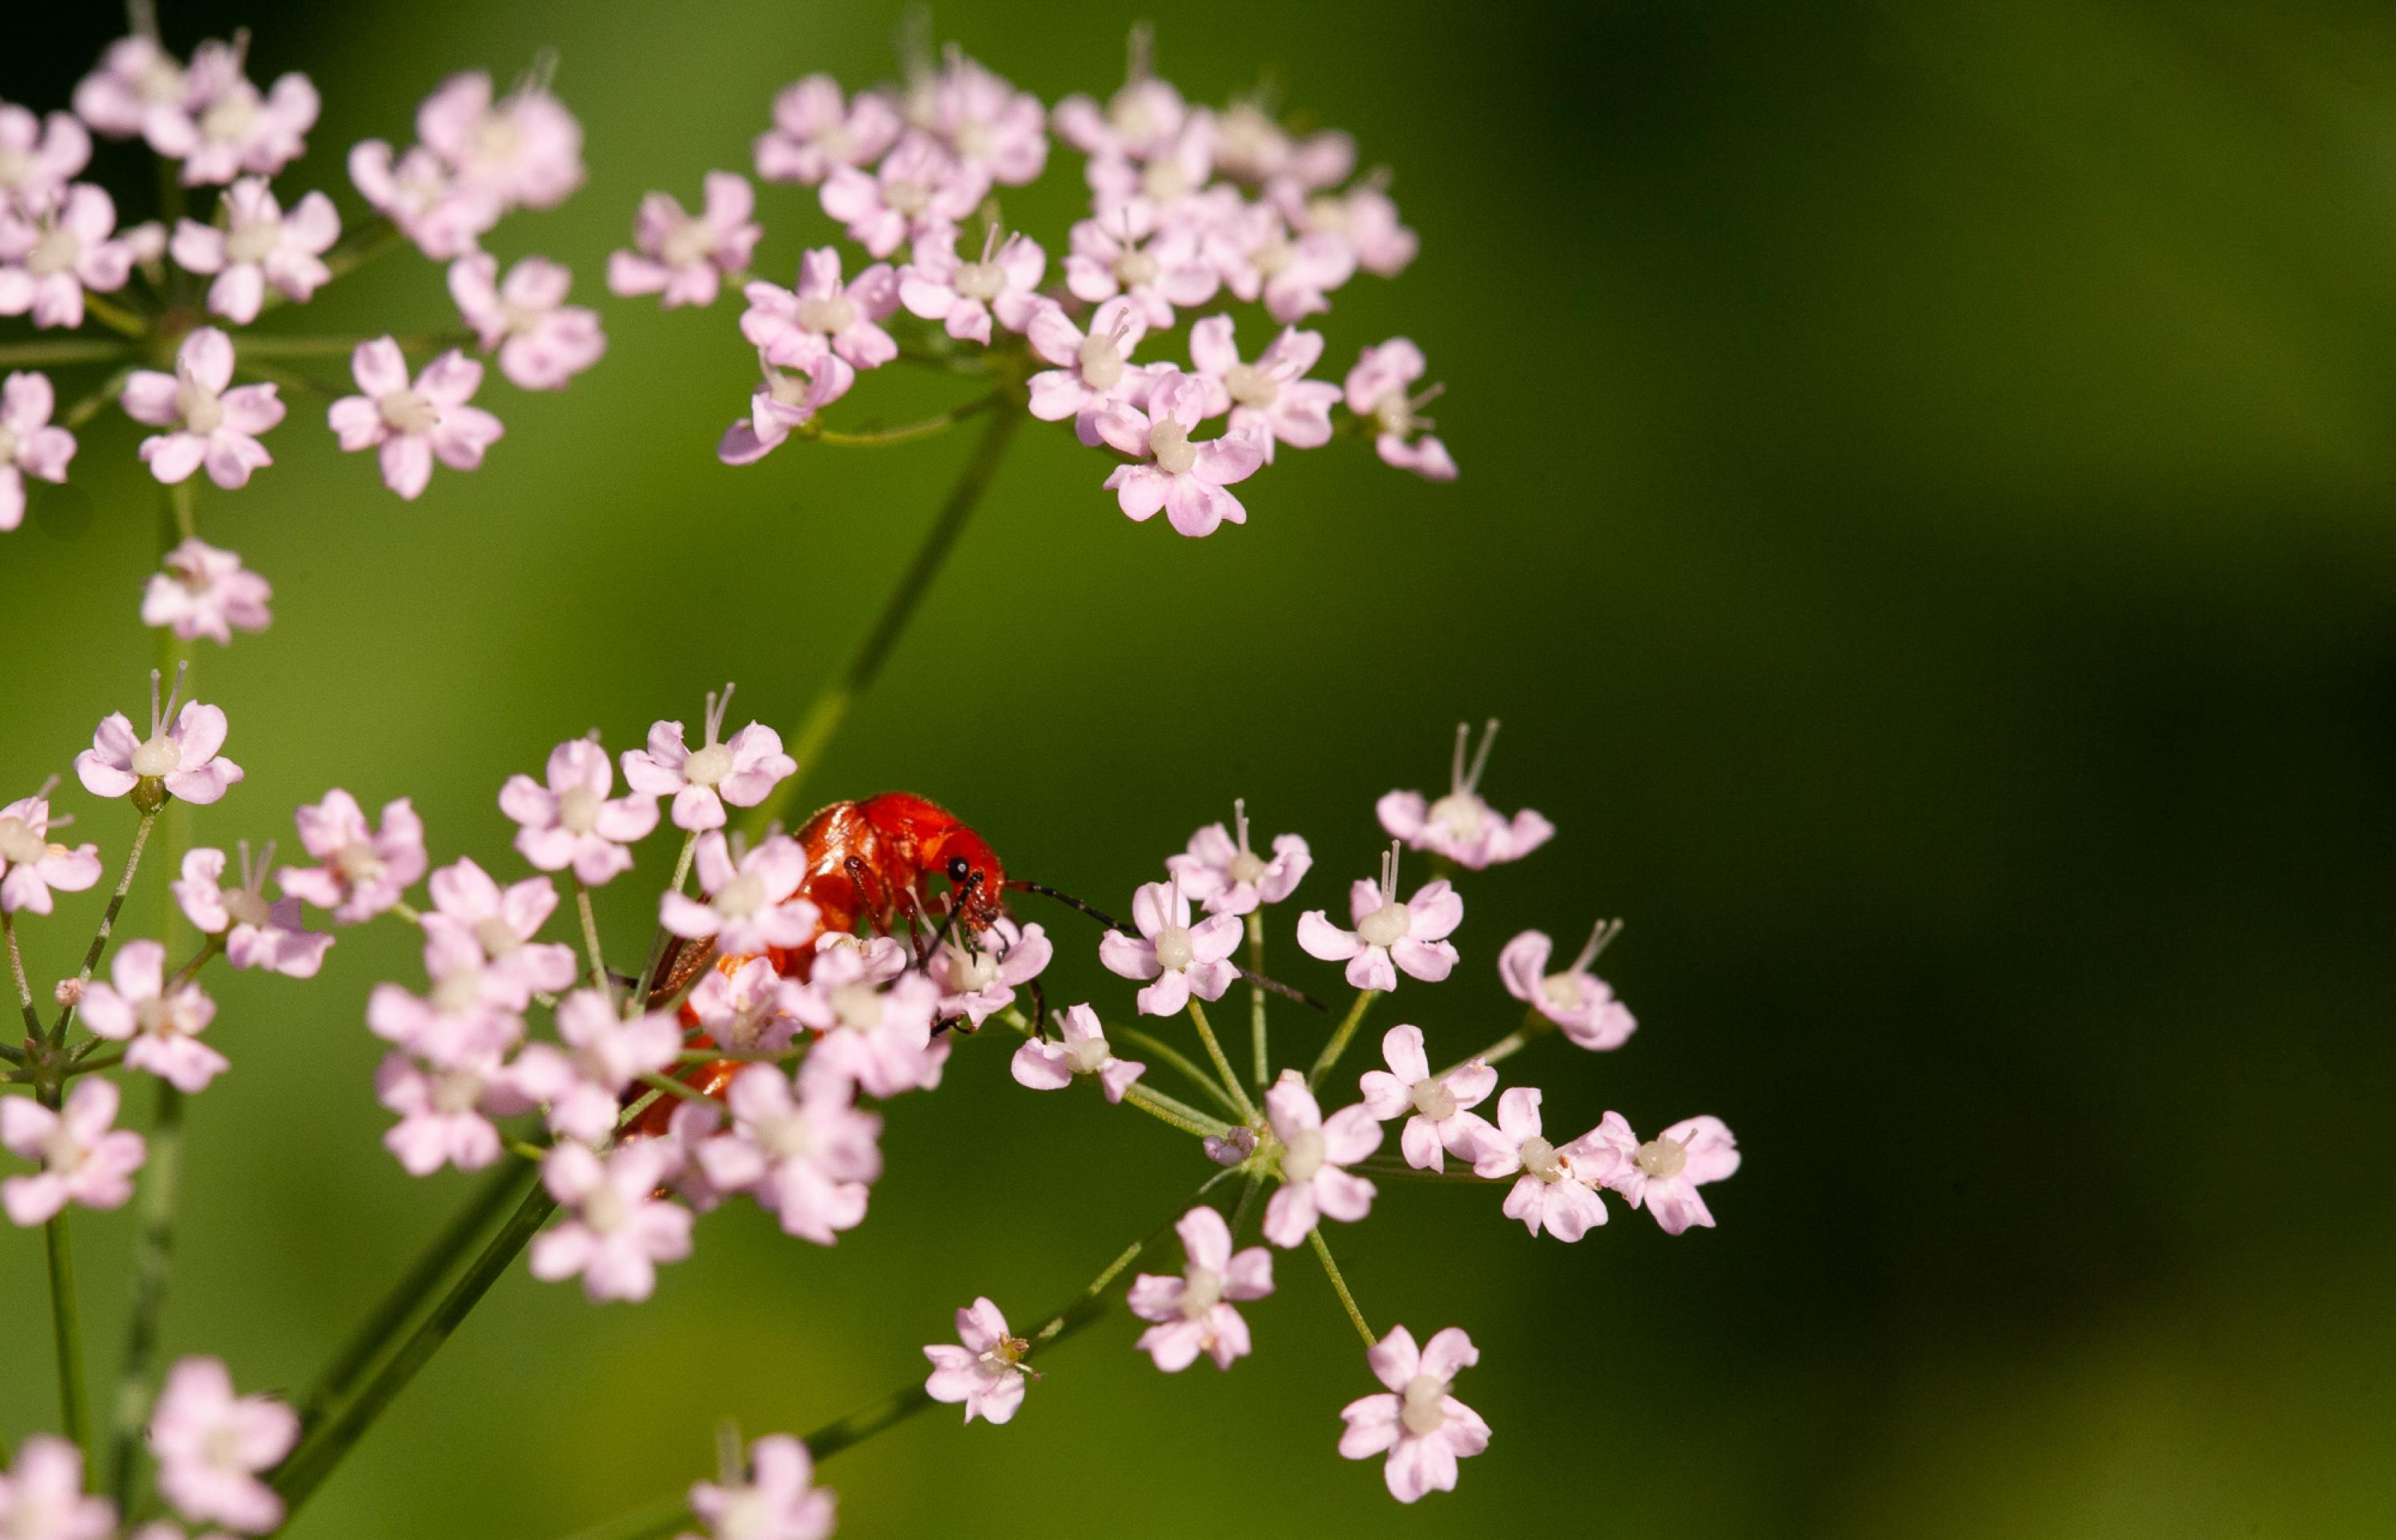 Ein länglicher roter Käfer mit schwarzen Augen klettert an einer Blütendolde herum.